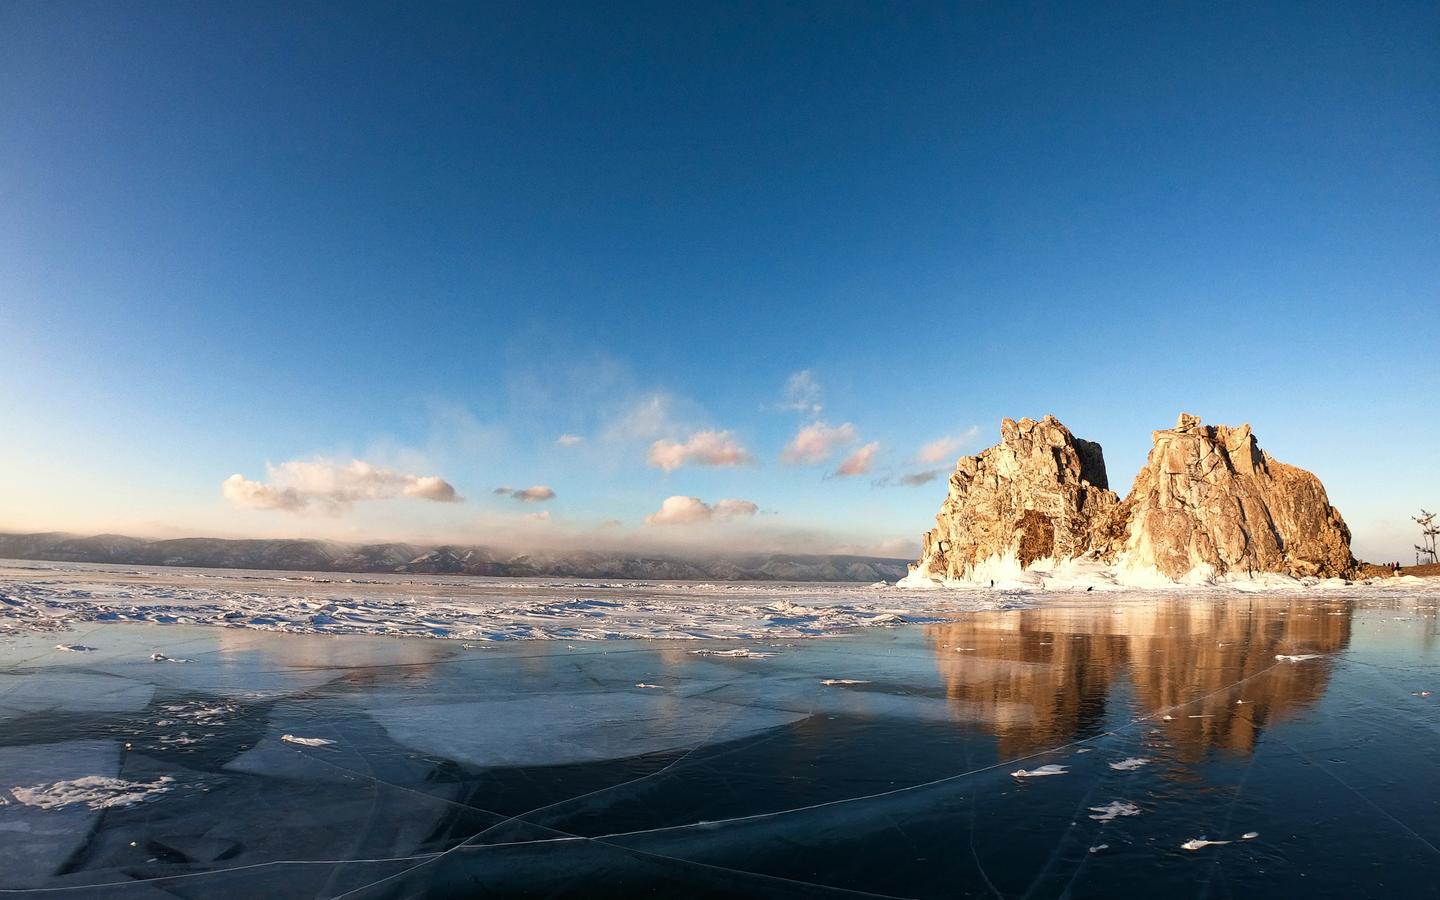 “西伯利亚明眸”贝加尔湖 摄影师的冰蓝之旅 (3)_旅游摄影-蜂鸟网